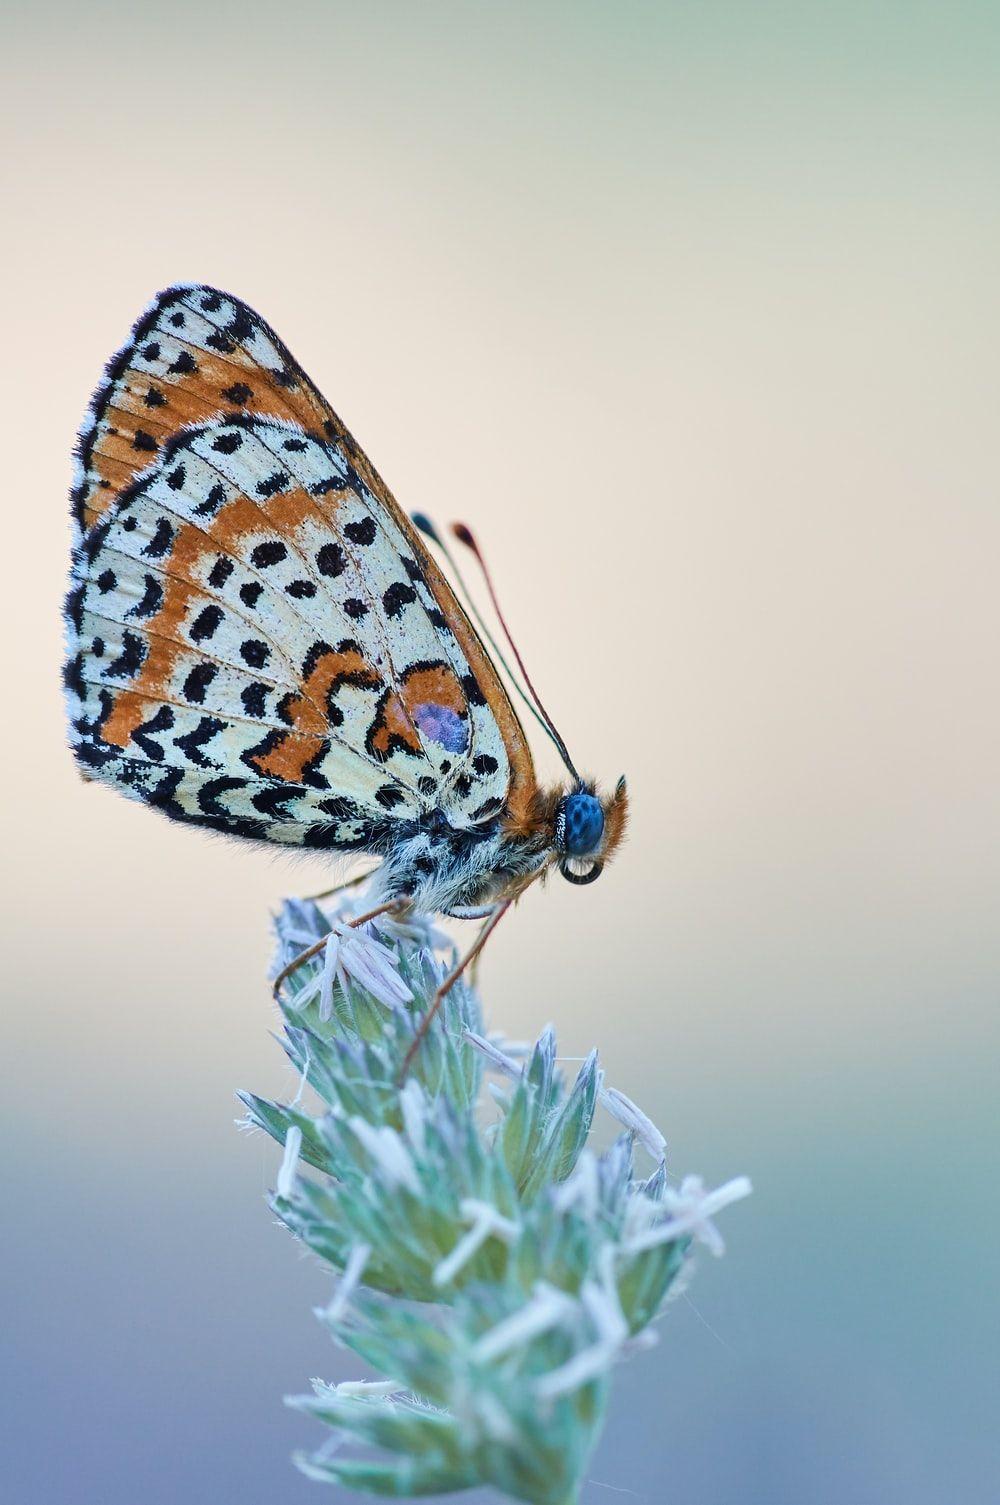 Con bướm nâu và đen 1000x1505 đậu trên ảnh hoa - Ảnh miễn phí